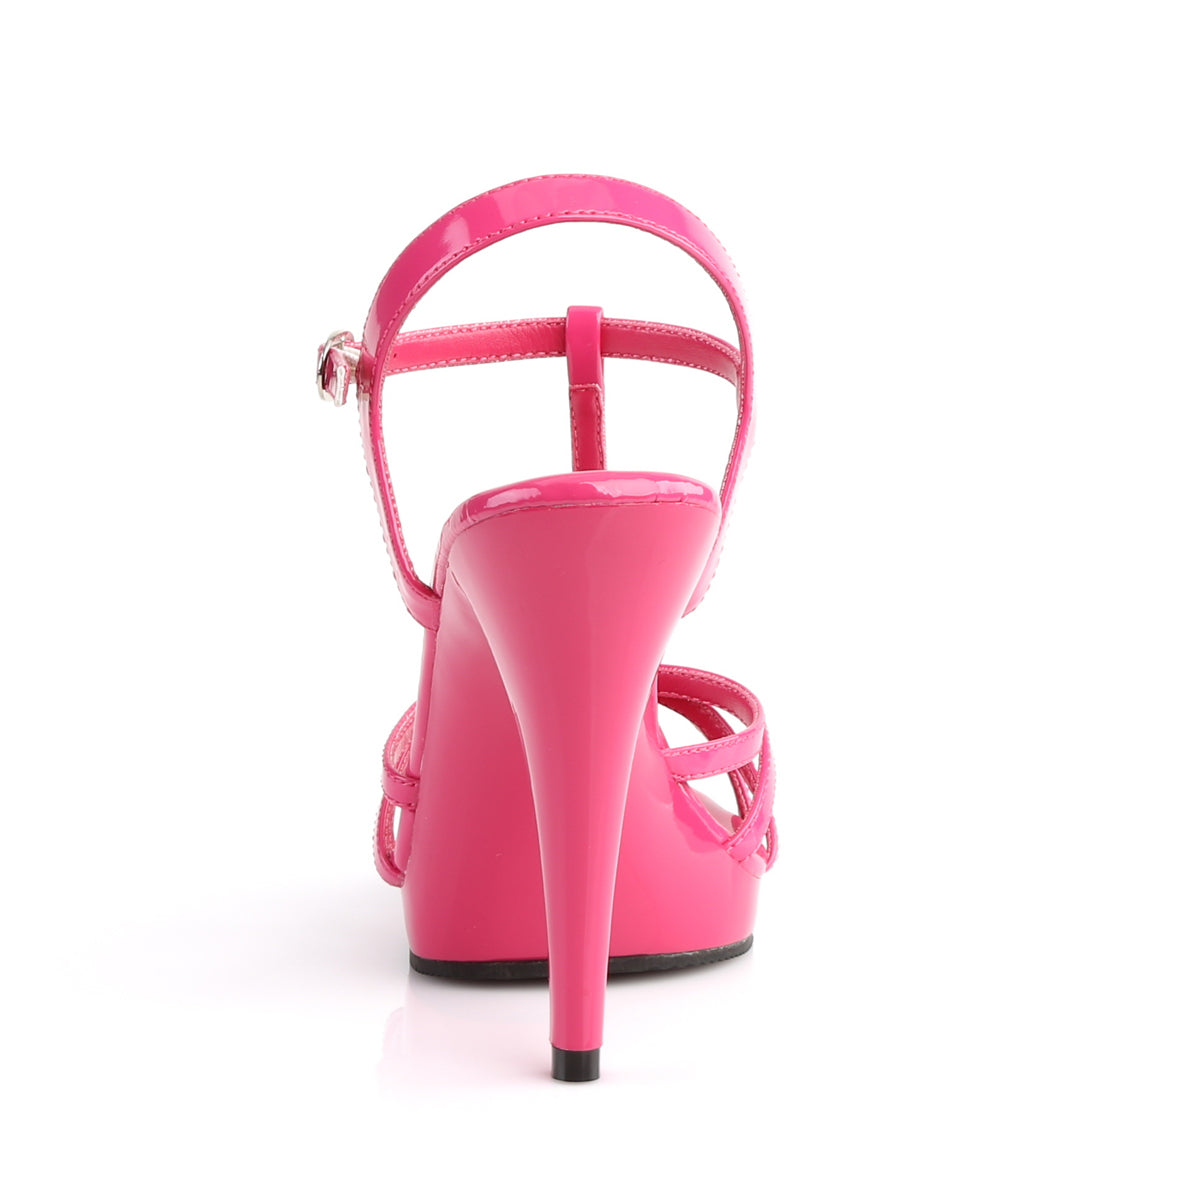 Fabulicious Sandali da donna FLAIR-420 Pat rosa caldo / rosa caldo